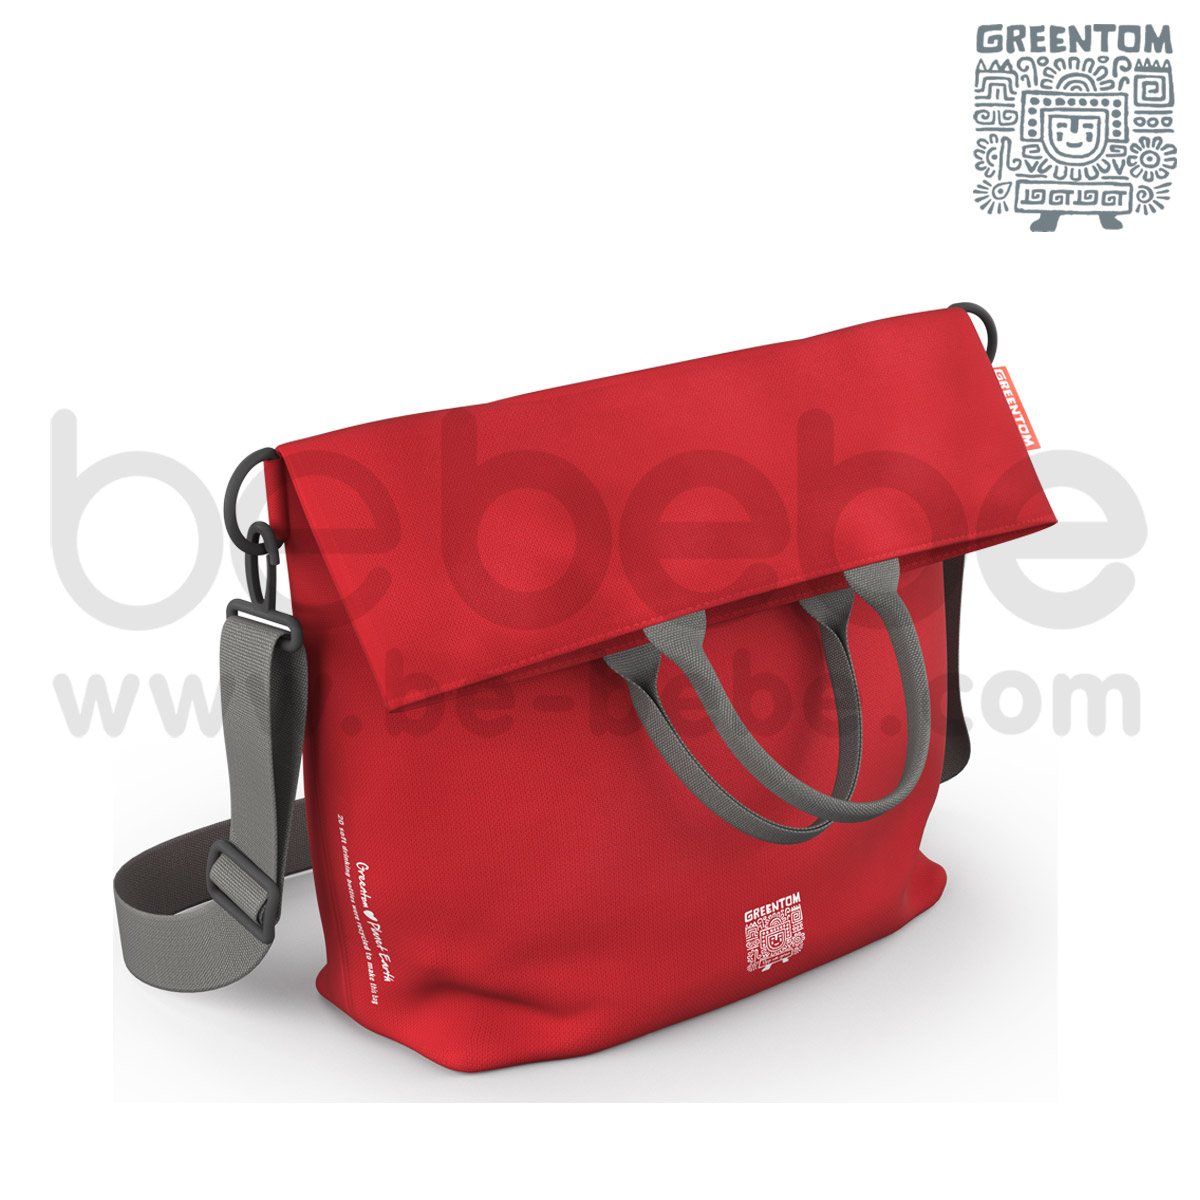 Greentom : Diaper Bag / Red